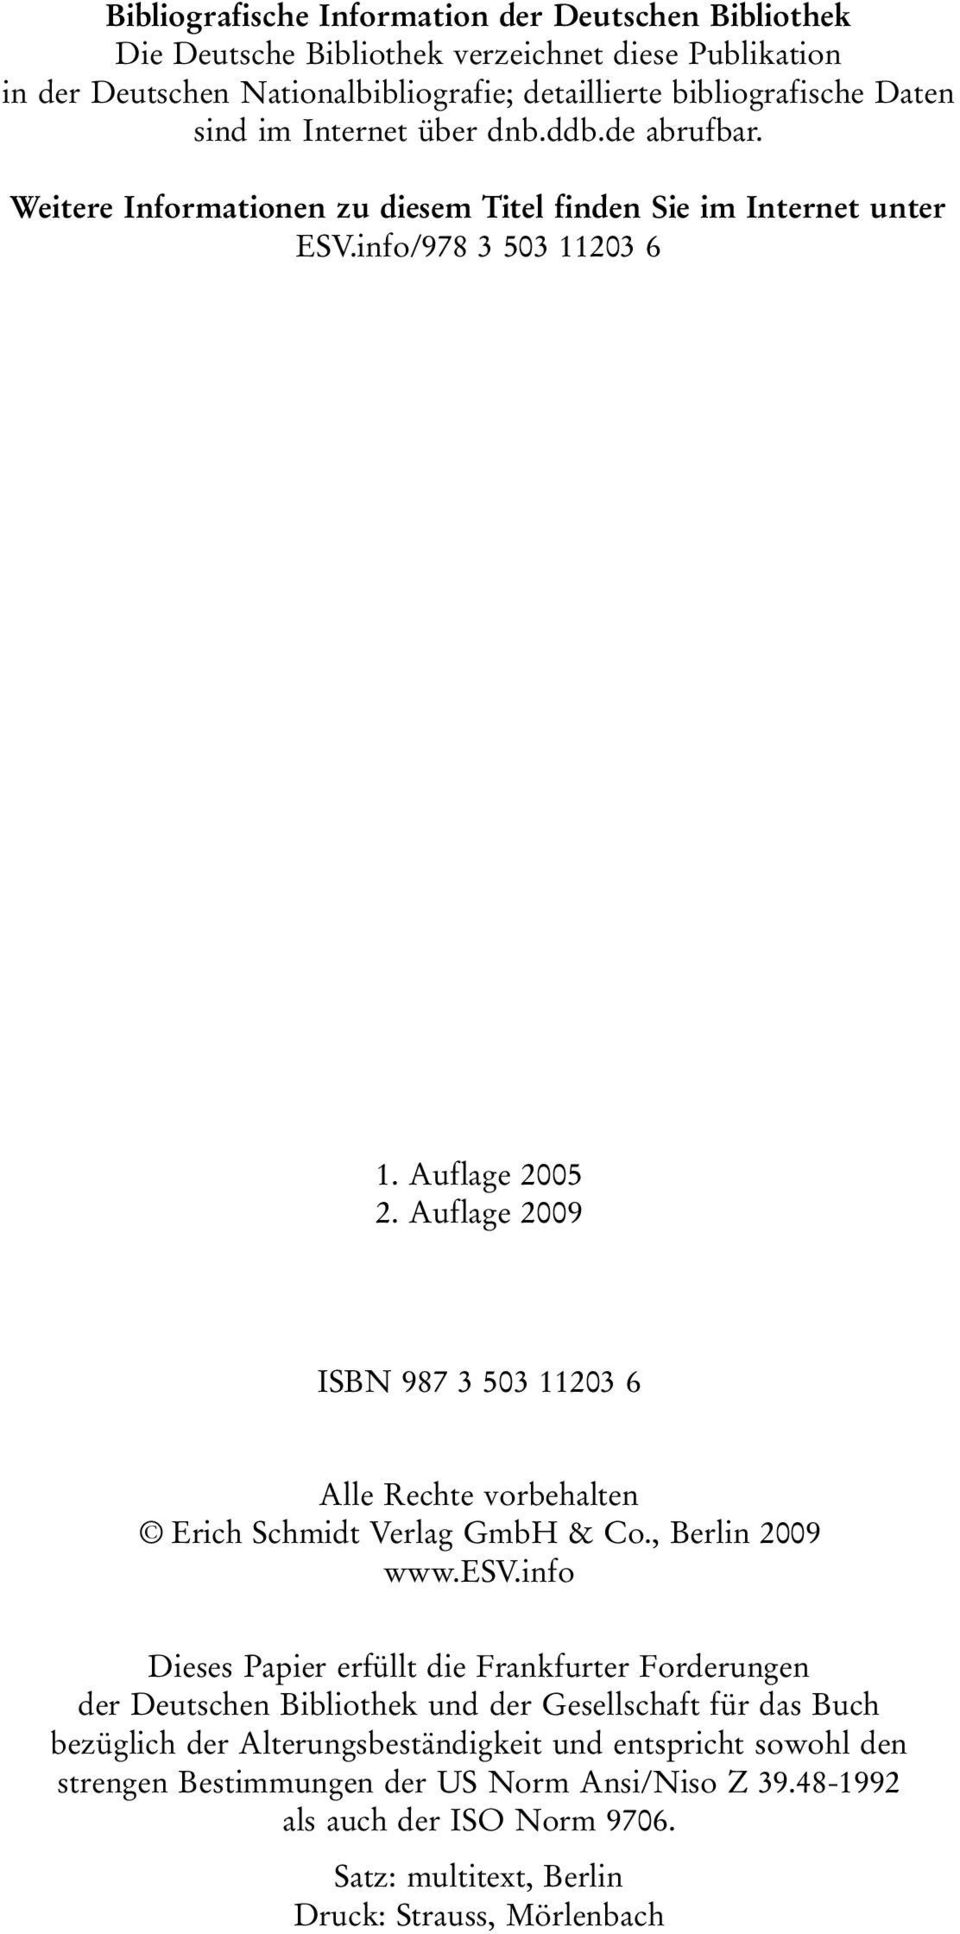 Auflage 2009 ISBN 987 3 503 11203 6 Alle Rechte vorbehalten Erich Schmidt Verlag GmbH & Co., Berlin 2009 www.esv.